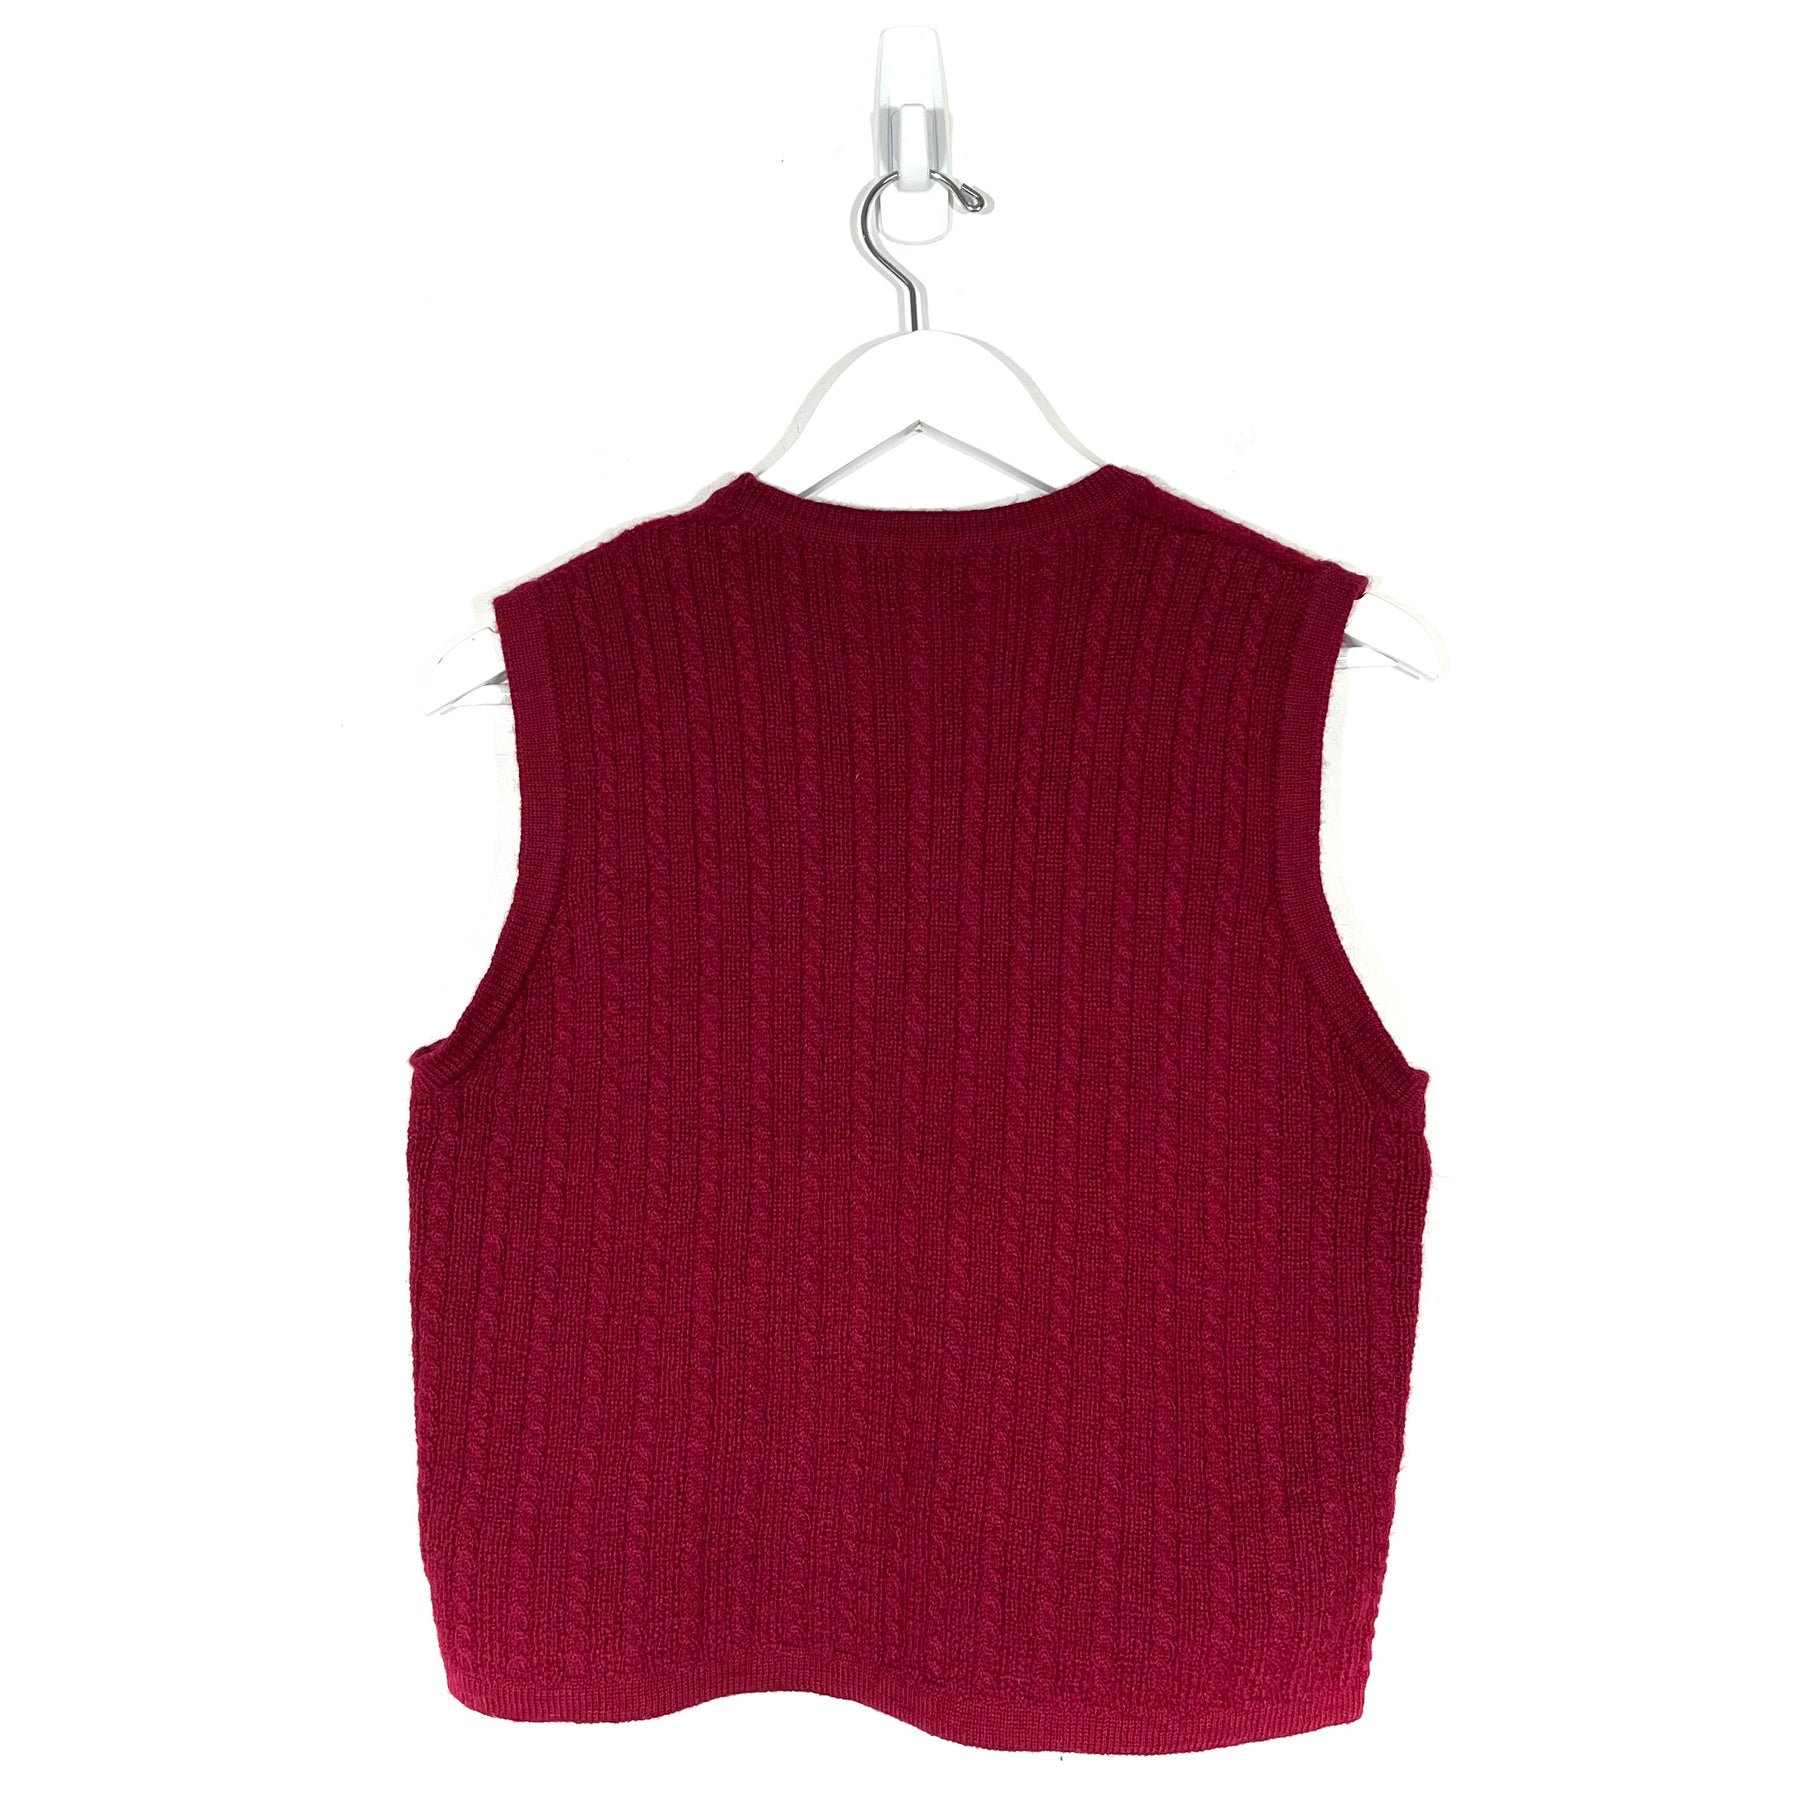 Vintage Pendleton Cardigan Sweater - Women's Large